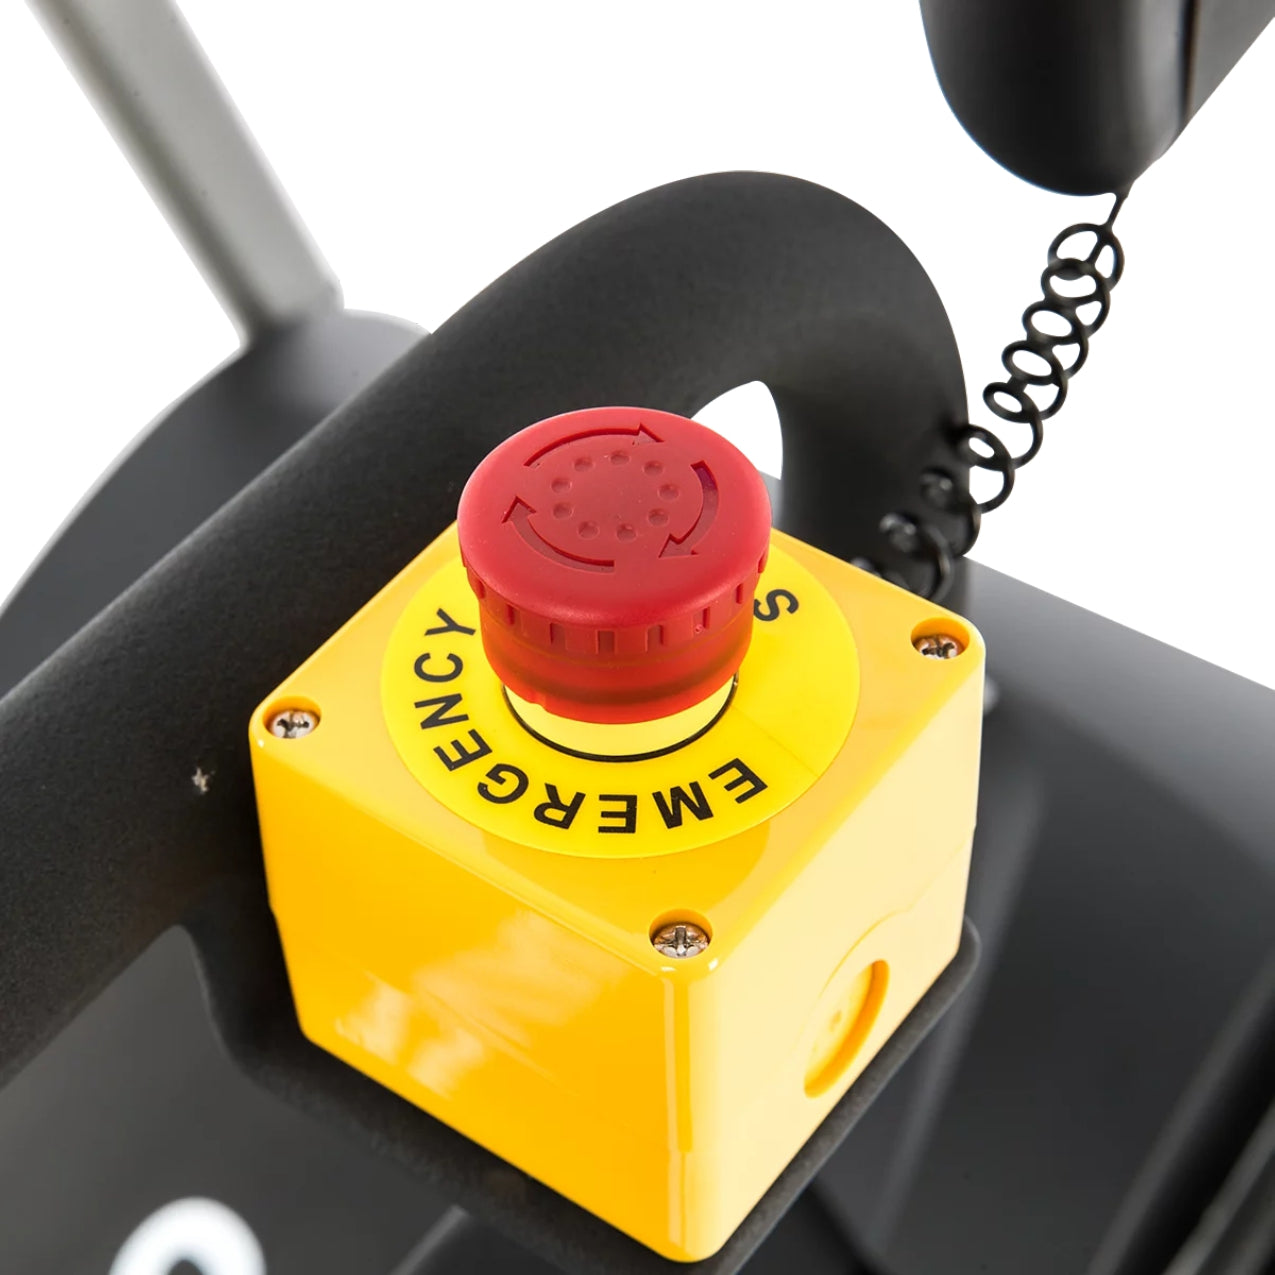 dyaco lw280 treadmill safety button